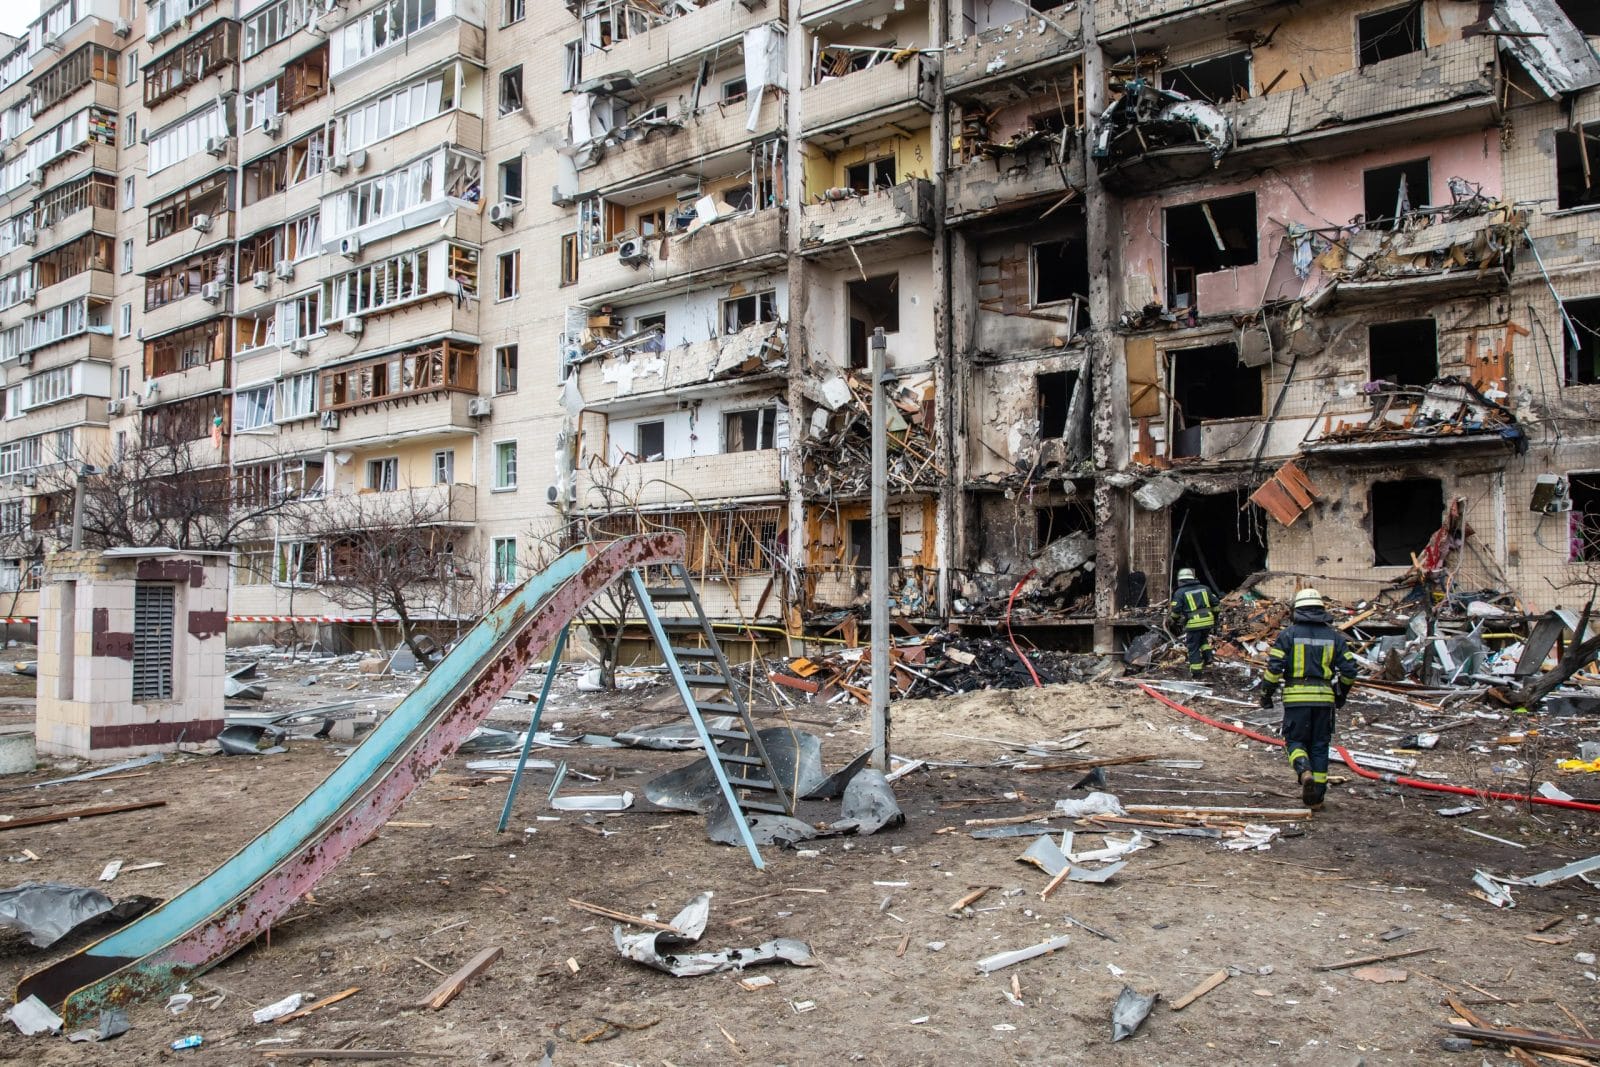 Destruction from war in Ukraine